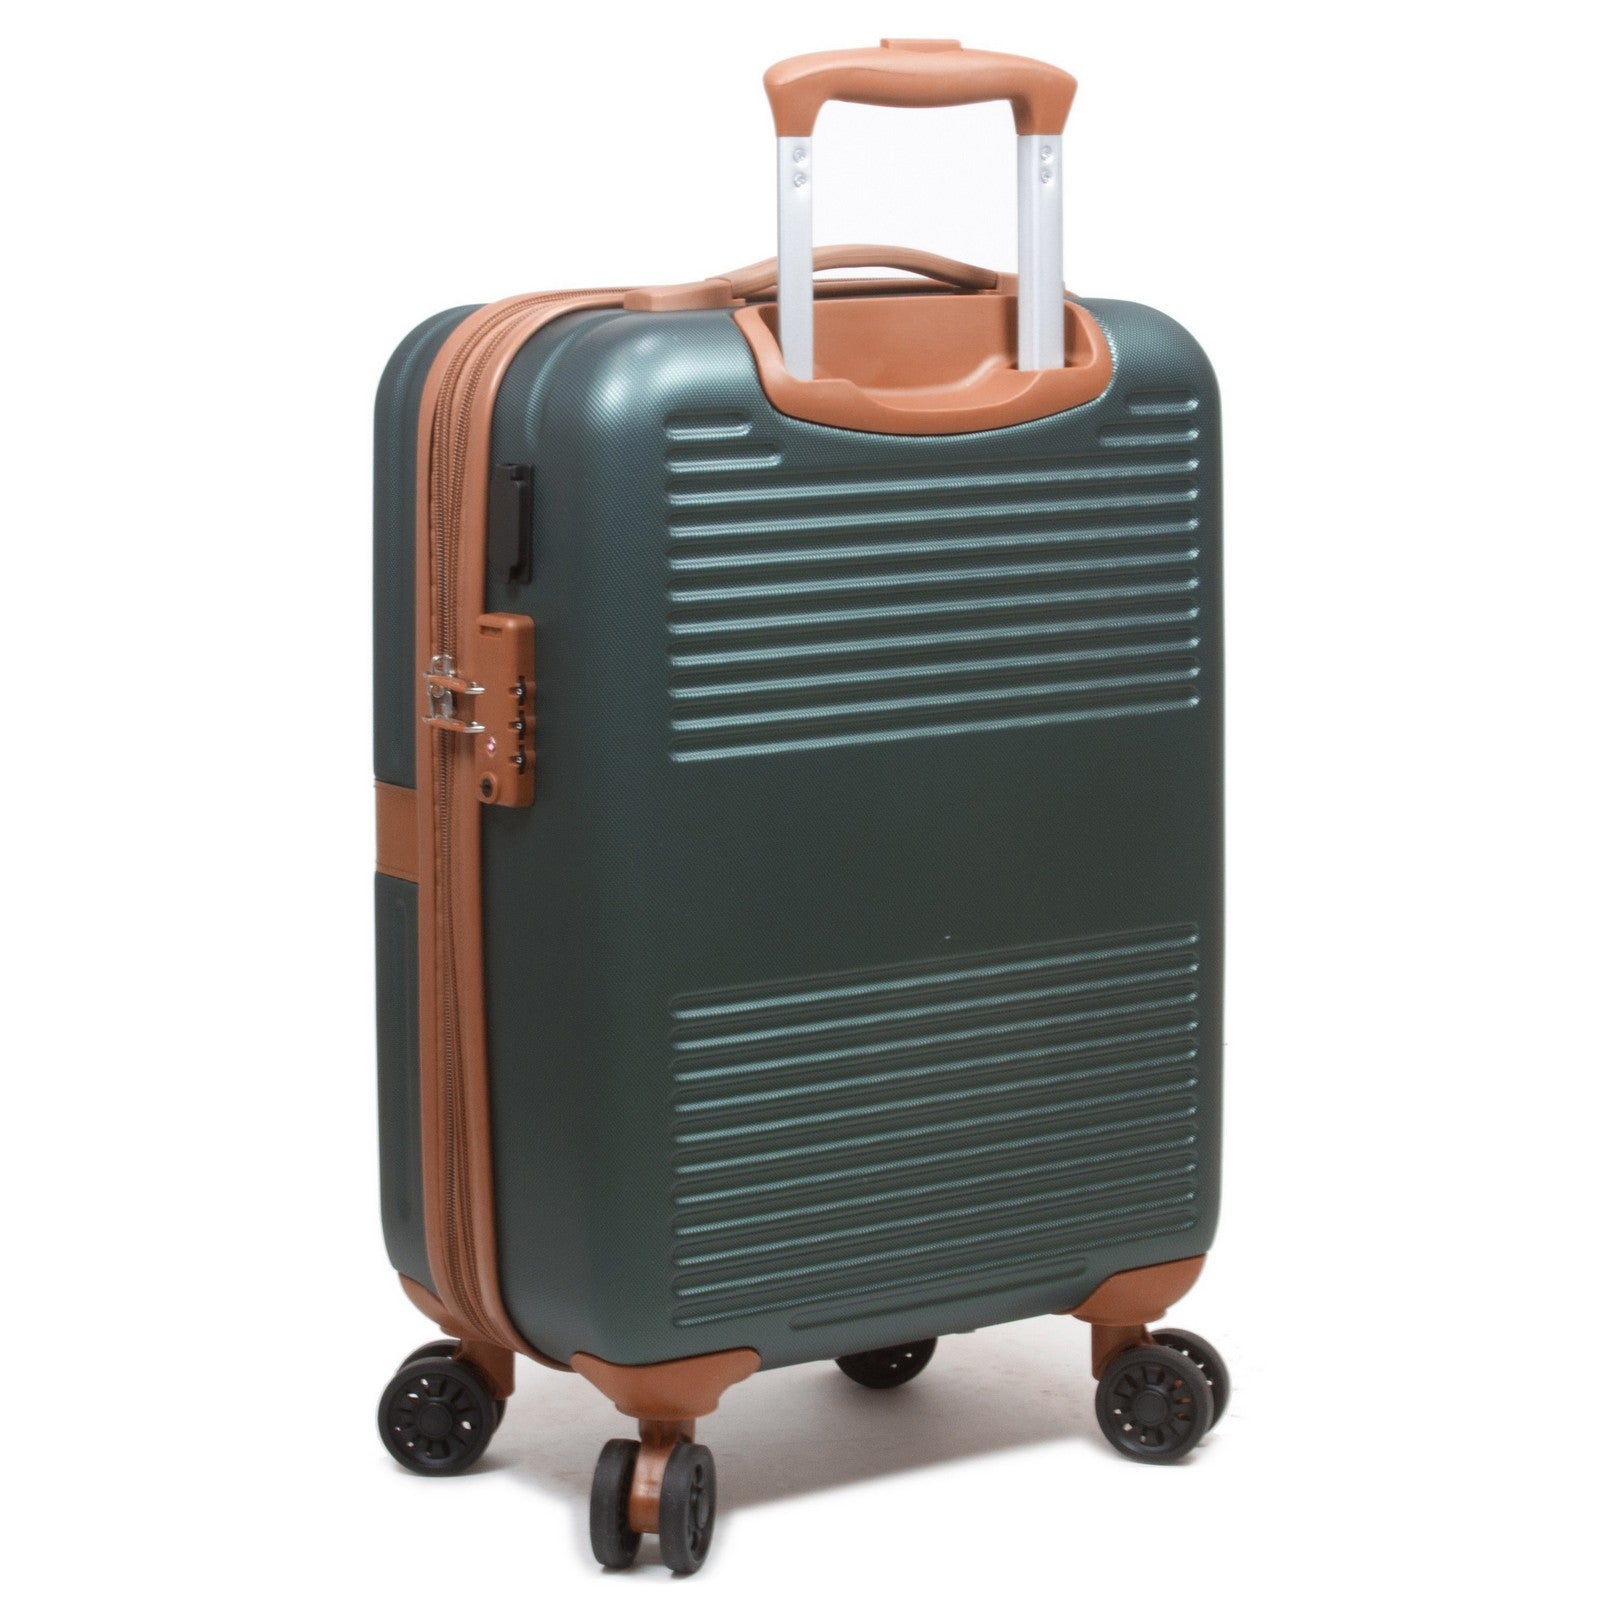 World Traveler Garland Hardside 3-Piece Luggage Set With USB Port